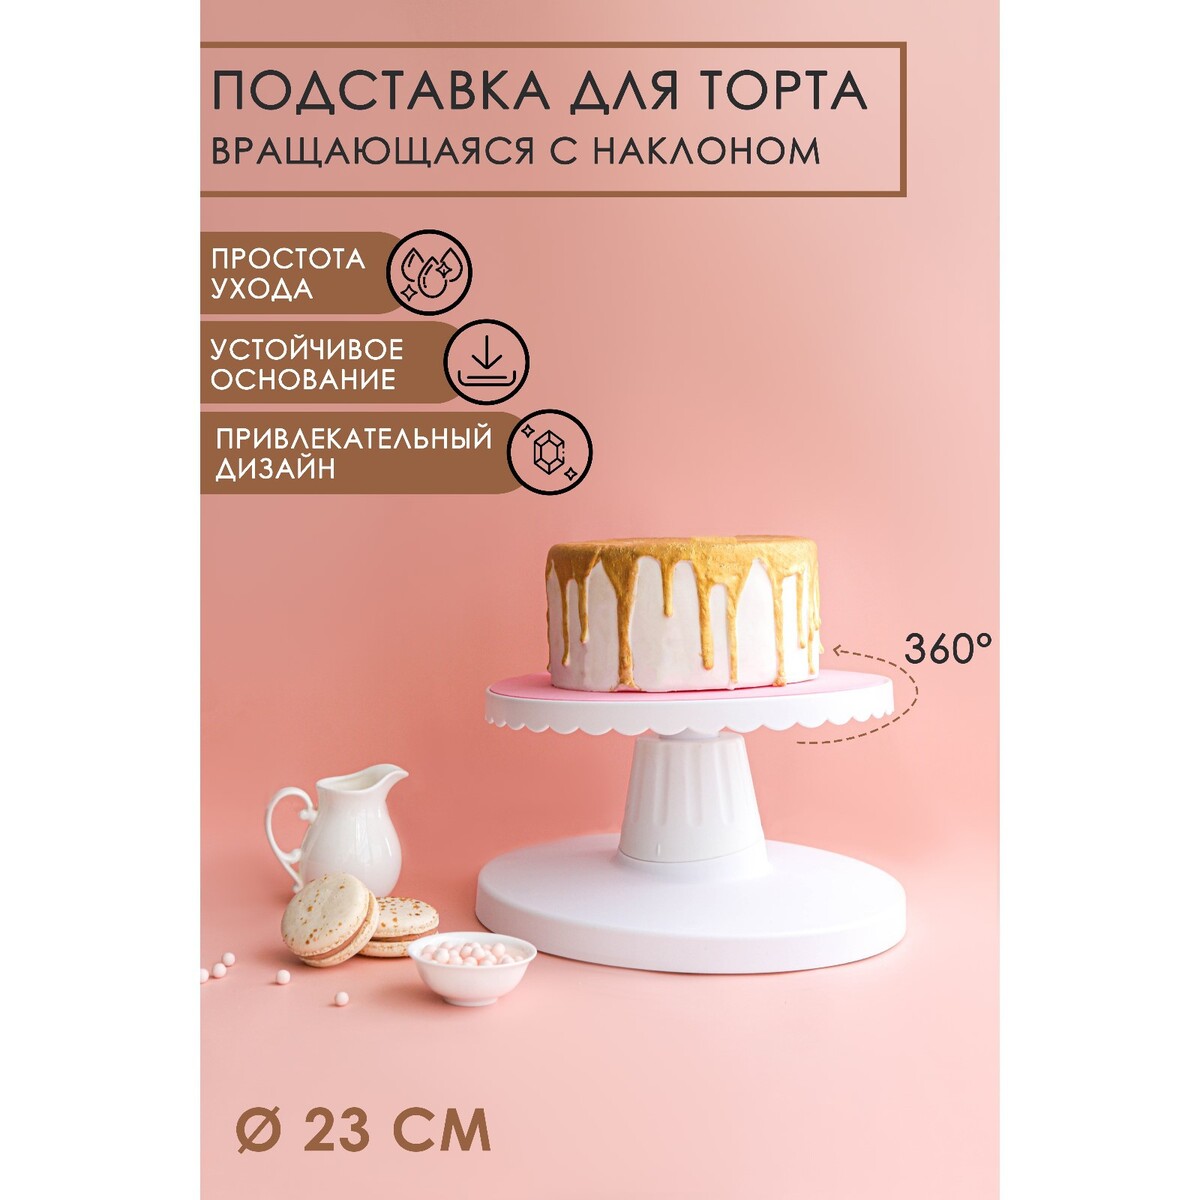 Подставка для торта вращающаяся с наклоном, d=23 см блюдо на ножке для торта bernadotte декор синие вензеля 32 см